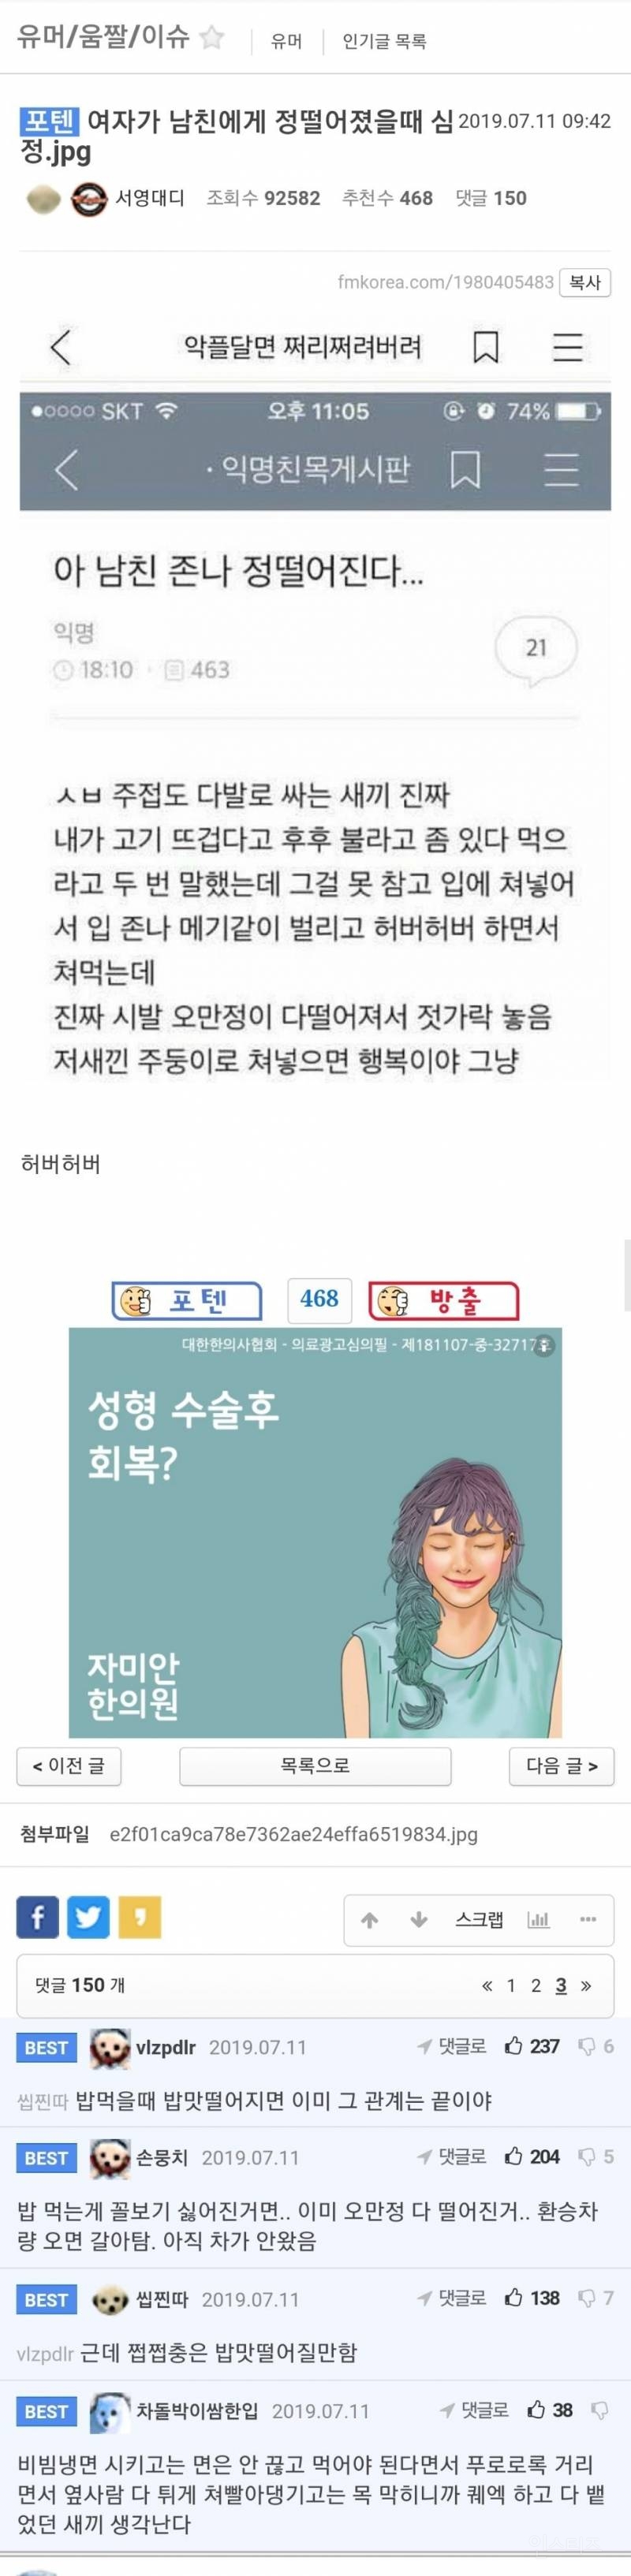 오조오억, 웅.앵웅은 남혐용어가 맞을까?? | 인스티즈